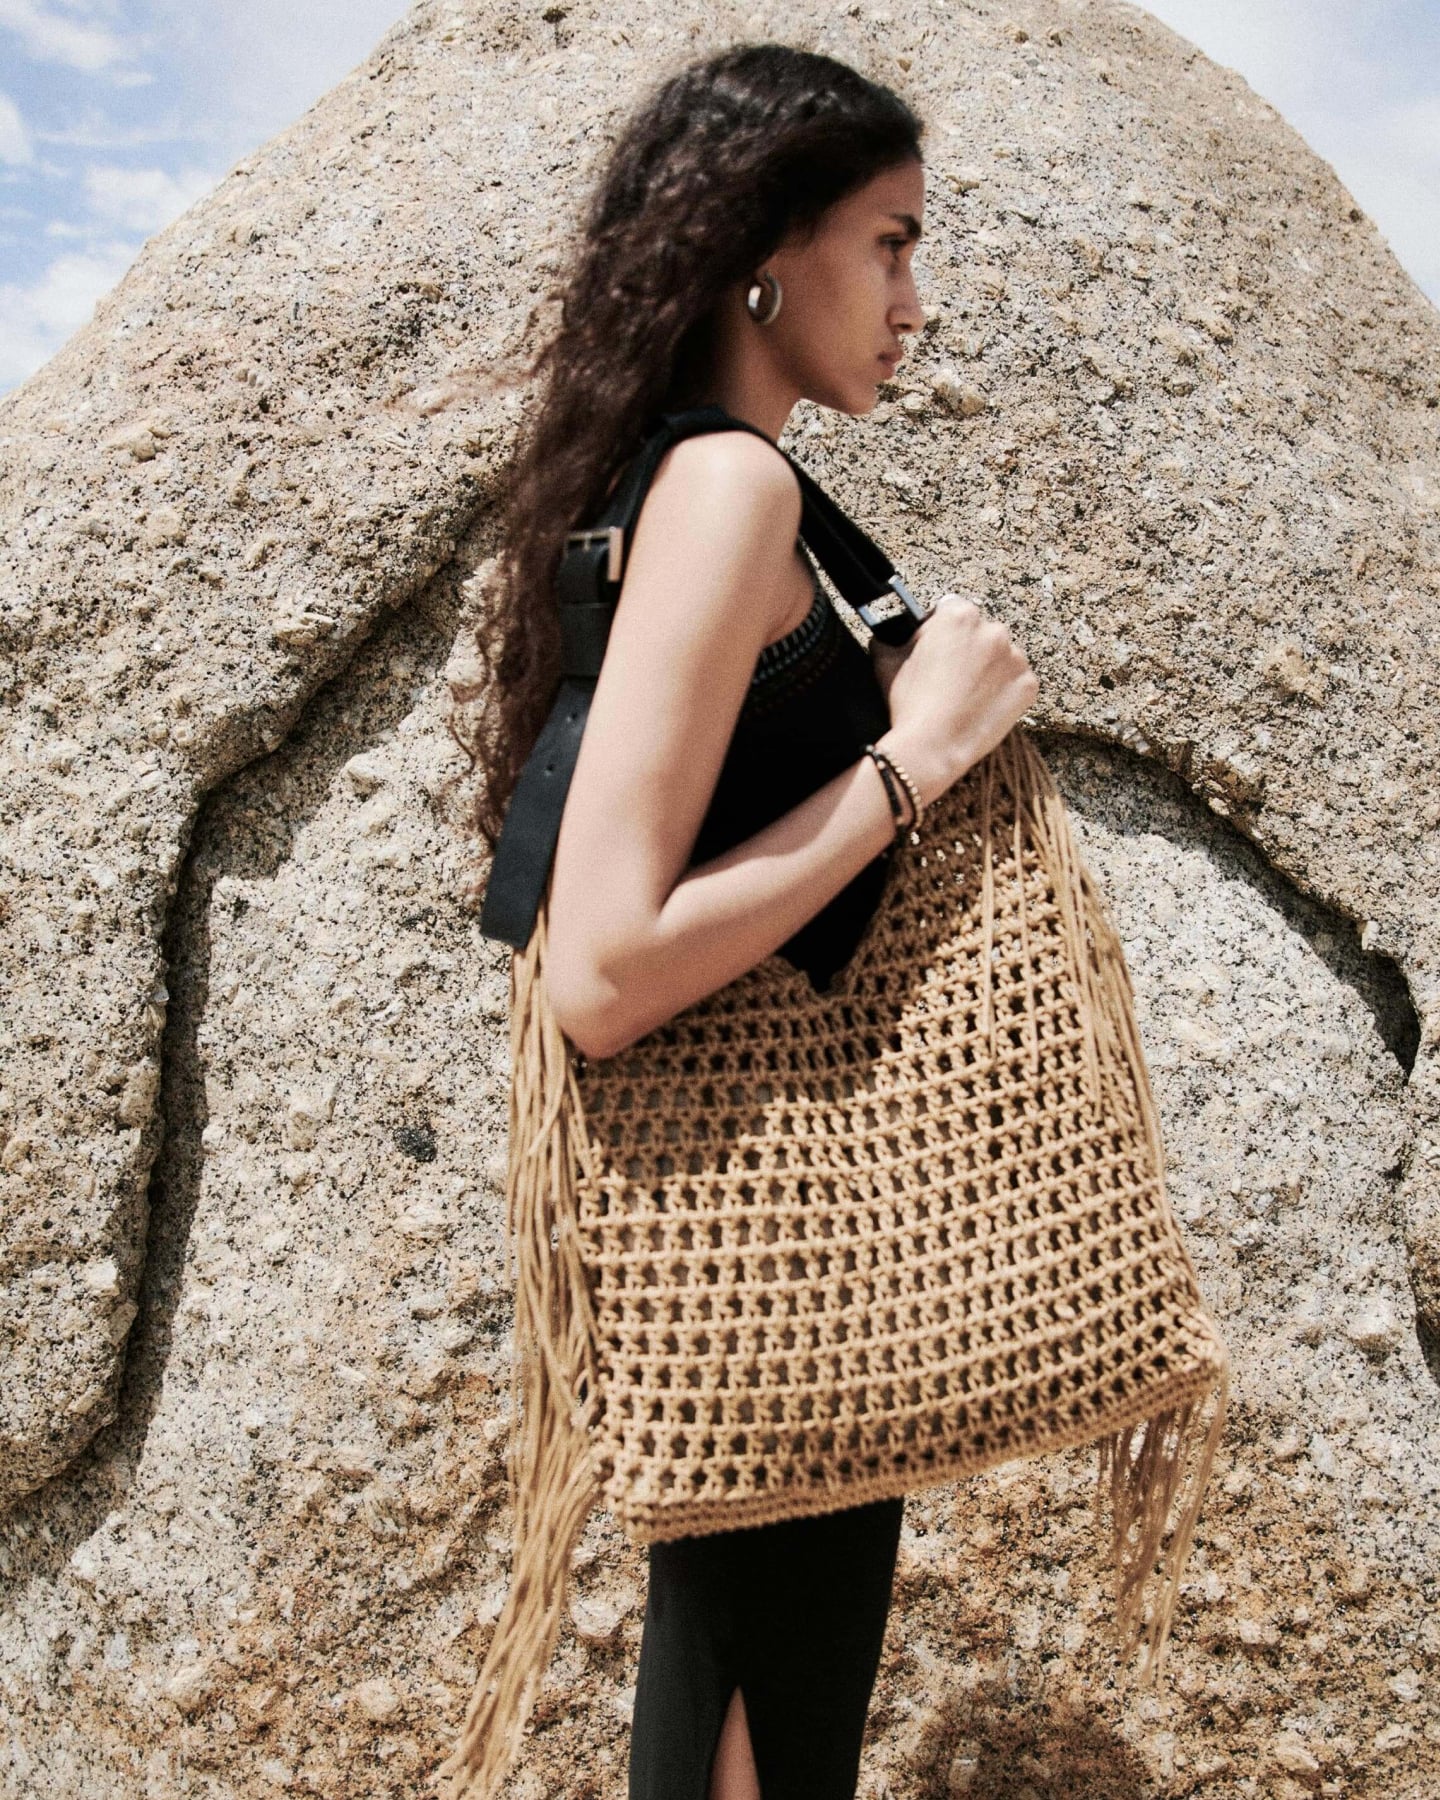 Femme portant une robe noire et un sac en crochet se tenant devant un grand rocher.